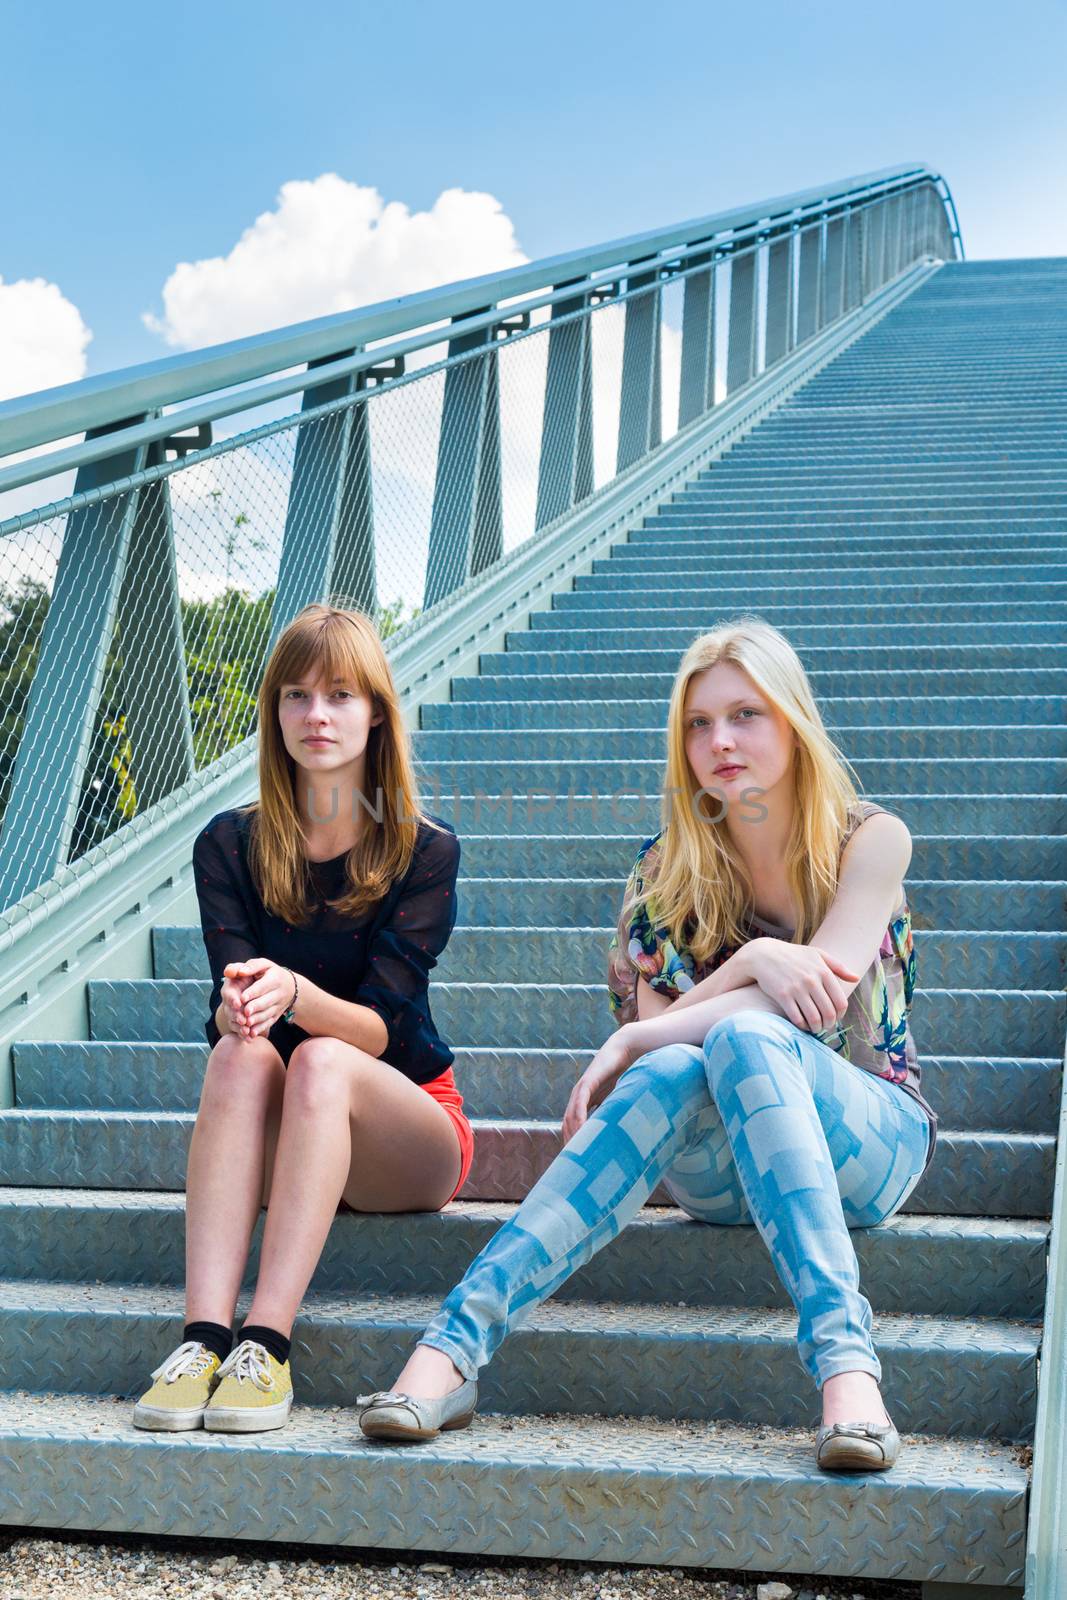 Two dutch girls sitting on metal bridge by BenSchonewille